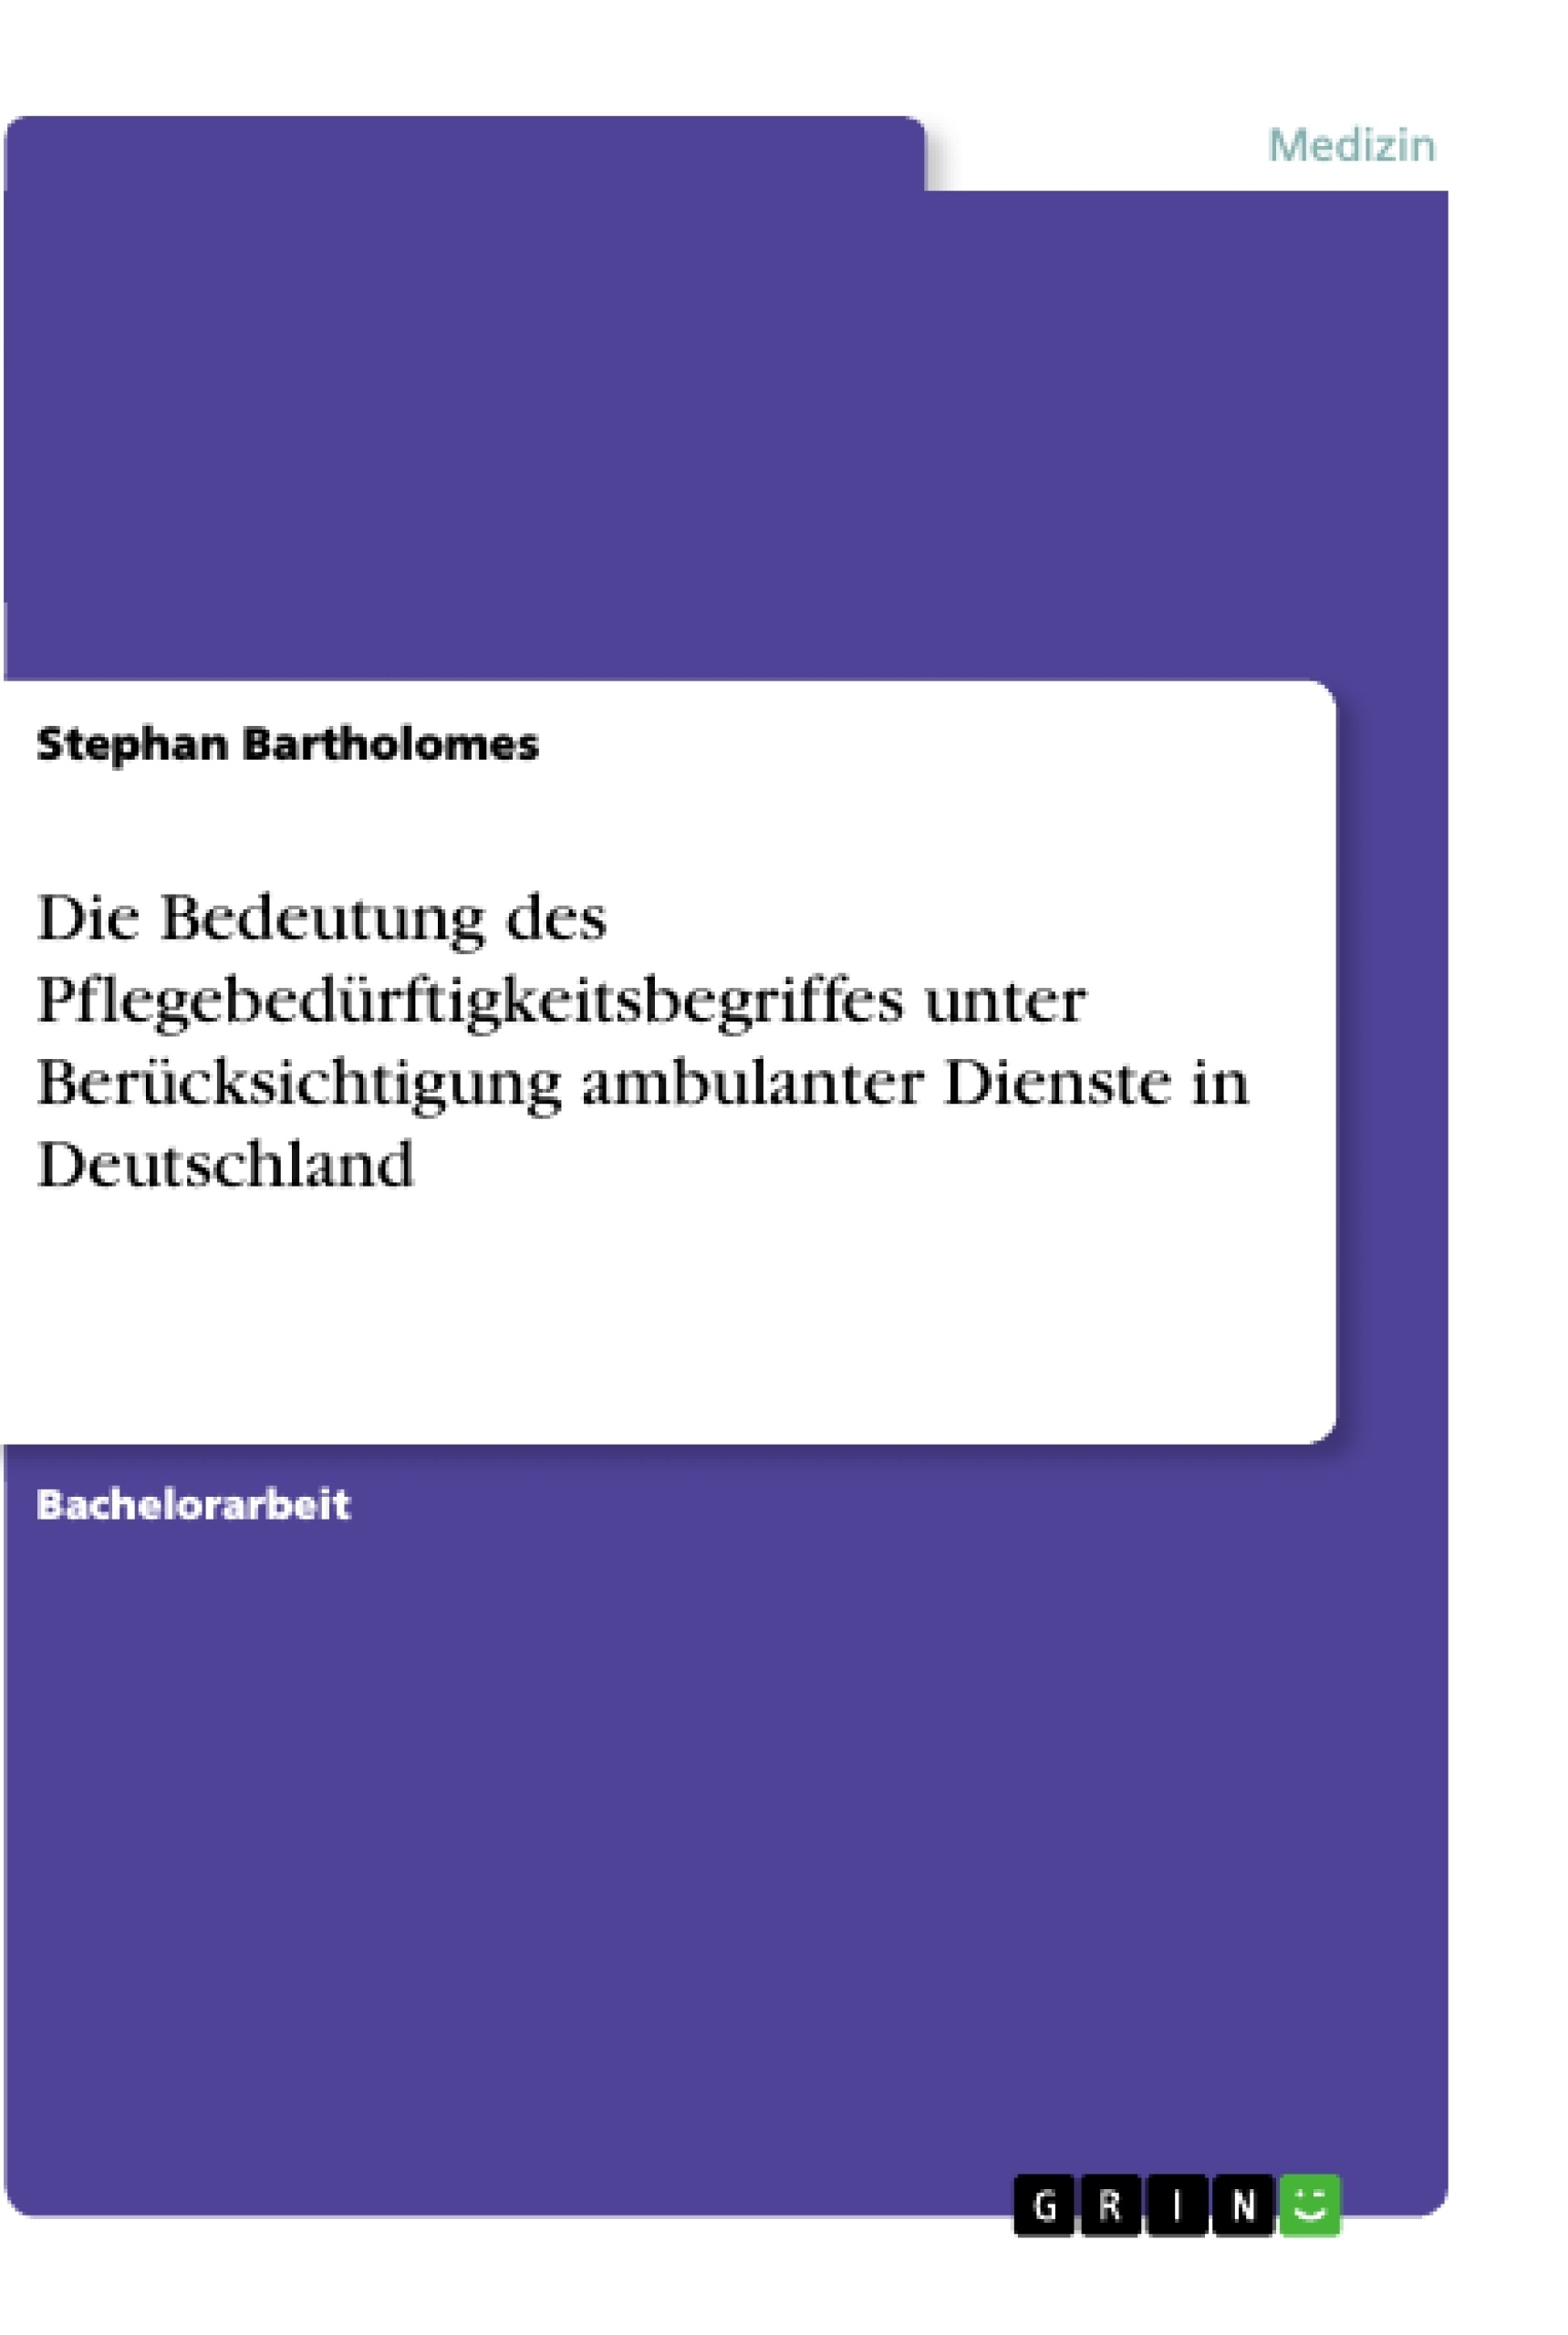 Titel: Die Bedeutung des Pflegebedürftigkeitsbegriffes unter Berücksichtigung ambulanter Dienste in Deutschland